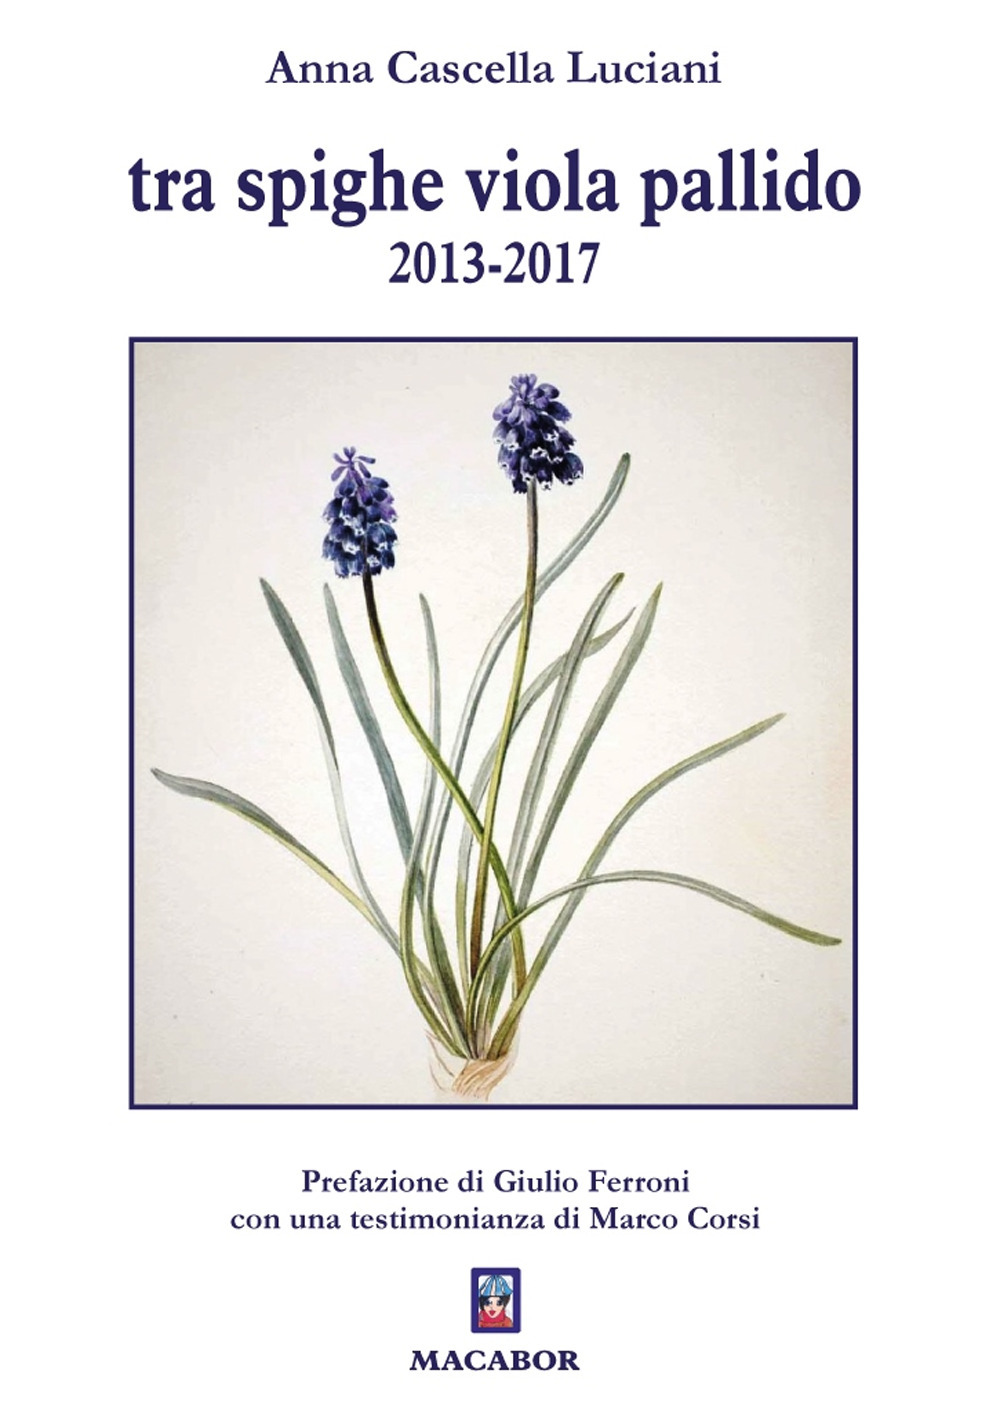 Libri Cascella Anna Luciani - Tra Spighe Viola Pallido 2013-2017 NUOVO SIGILLATO, EDIZIONE DEL 07/03/2022 SUBITO DISPONIBILE